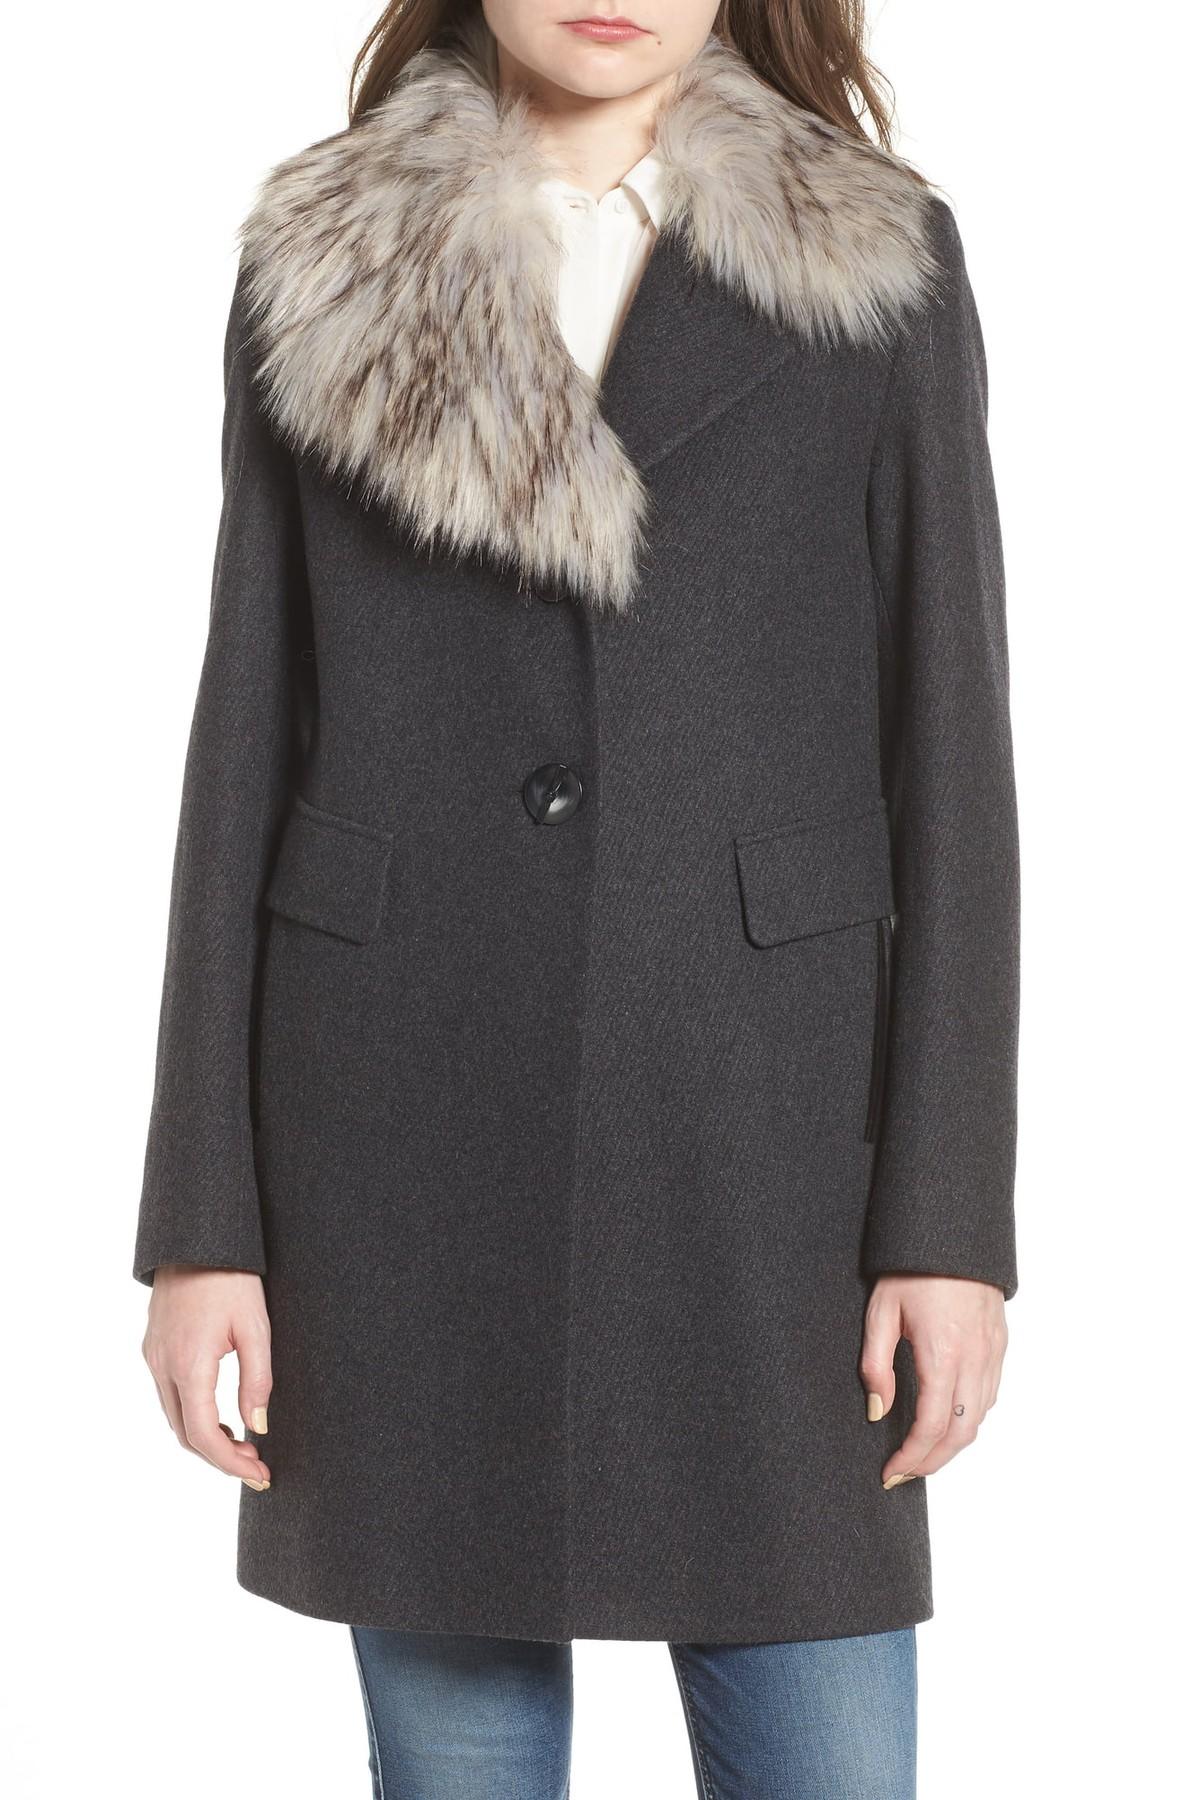 Sam Edelman Walker Faux Fur Collar Wool Blend Coat in Grey (Gray) - Lyst